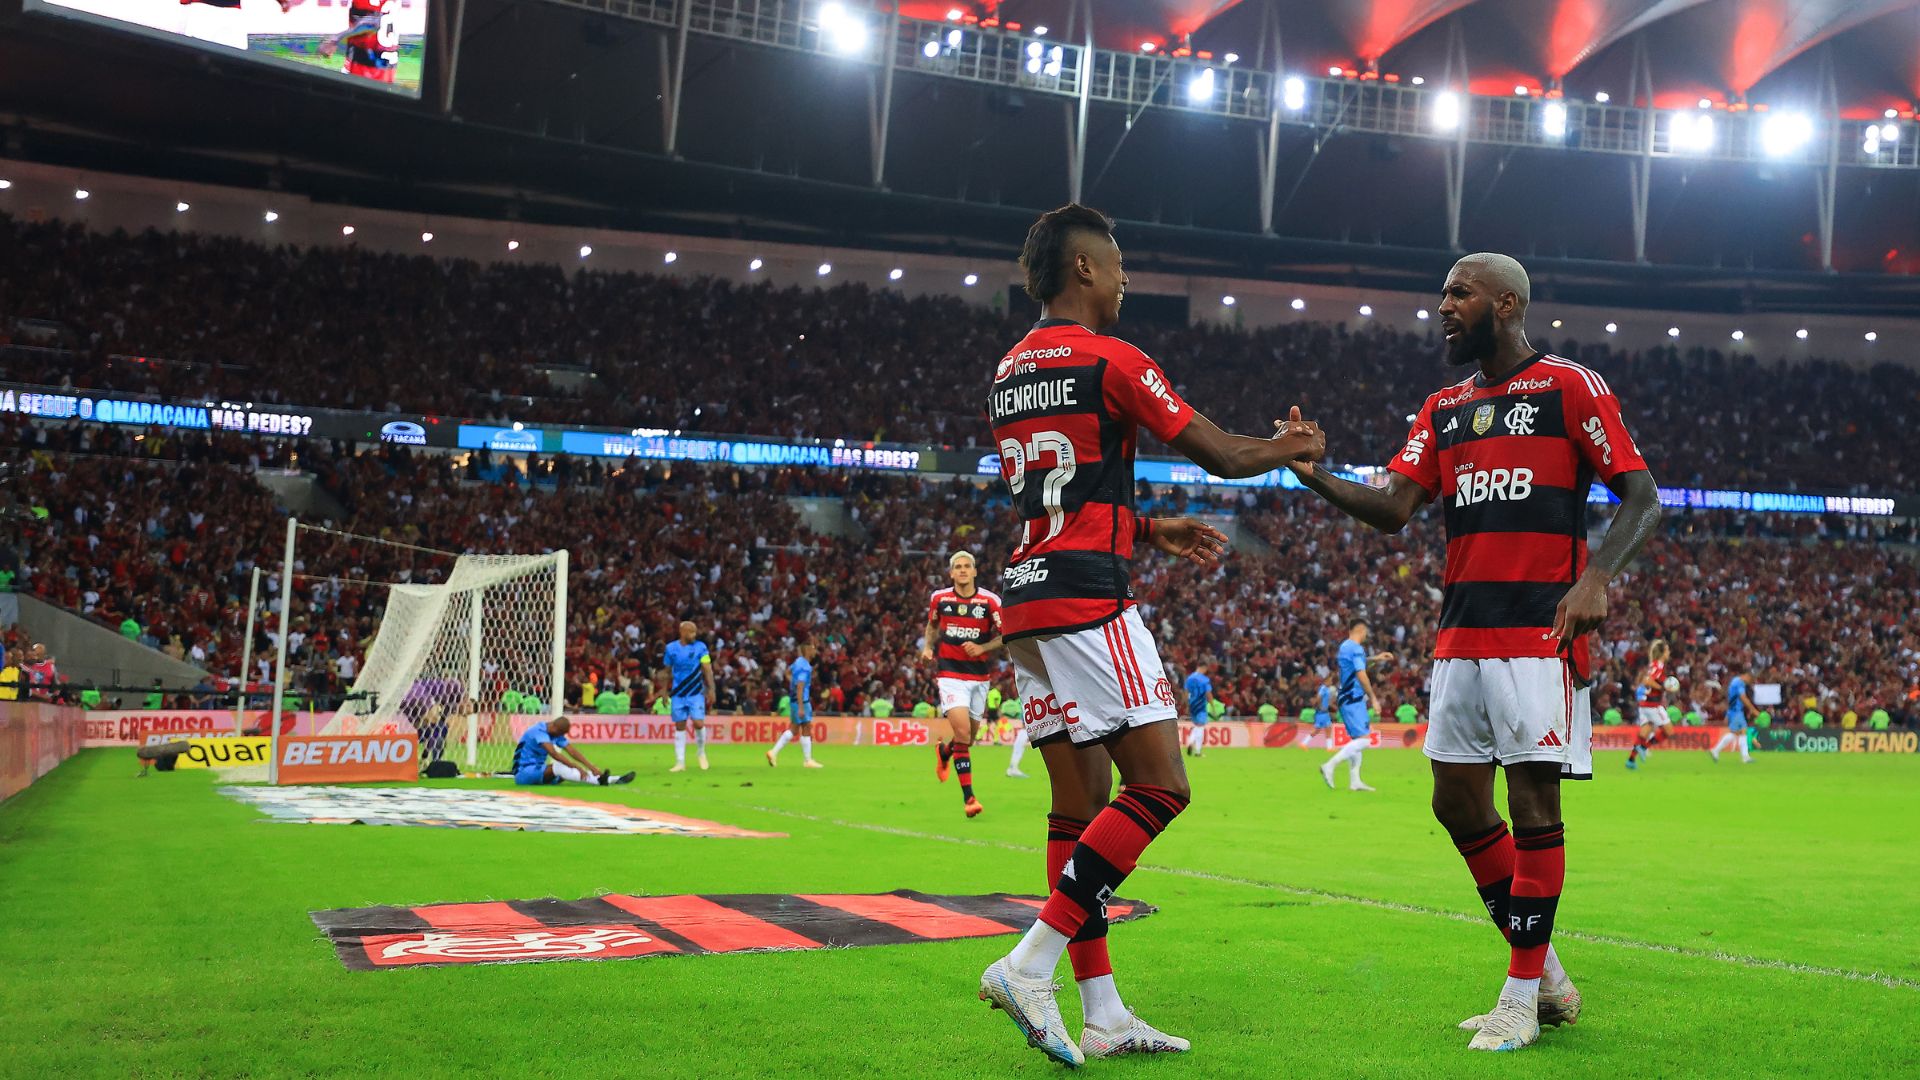 Flamengo x Bragantino: Bruno Henrique e Gerson são liberados para jogar